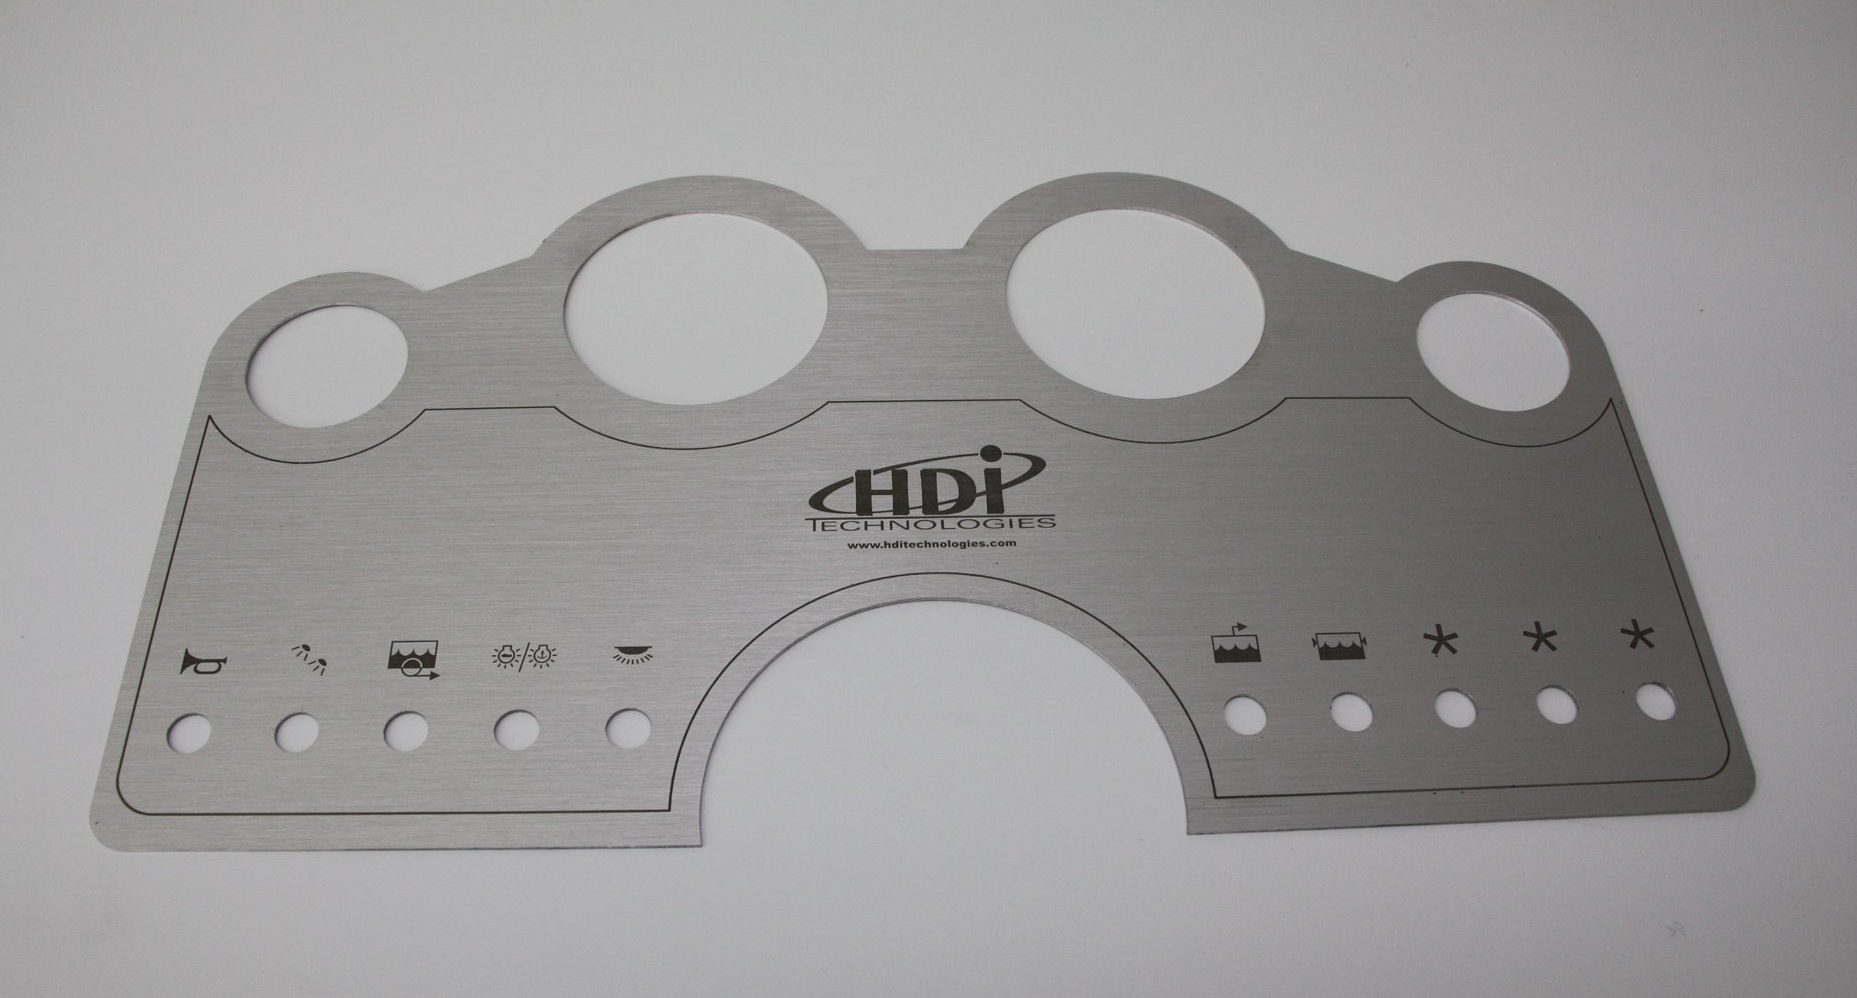 Panneau de Contrôle pour HDI Technologies